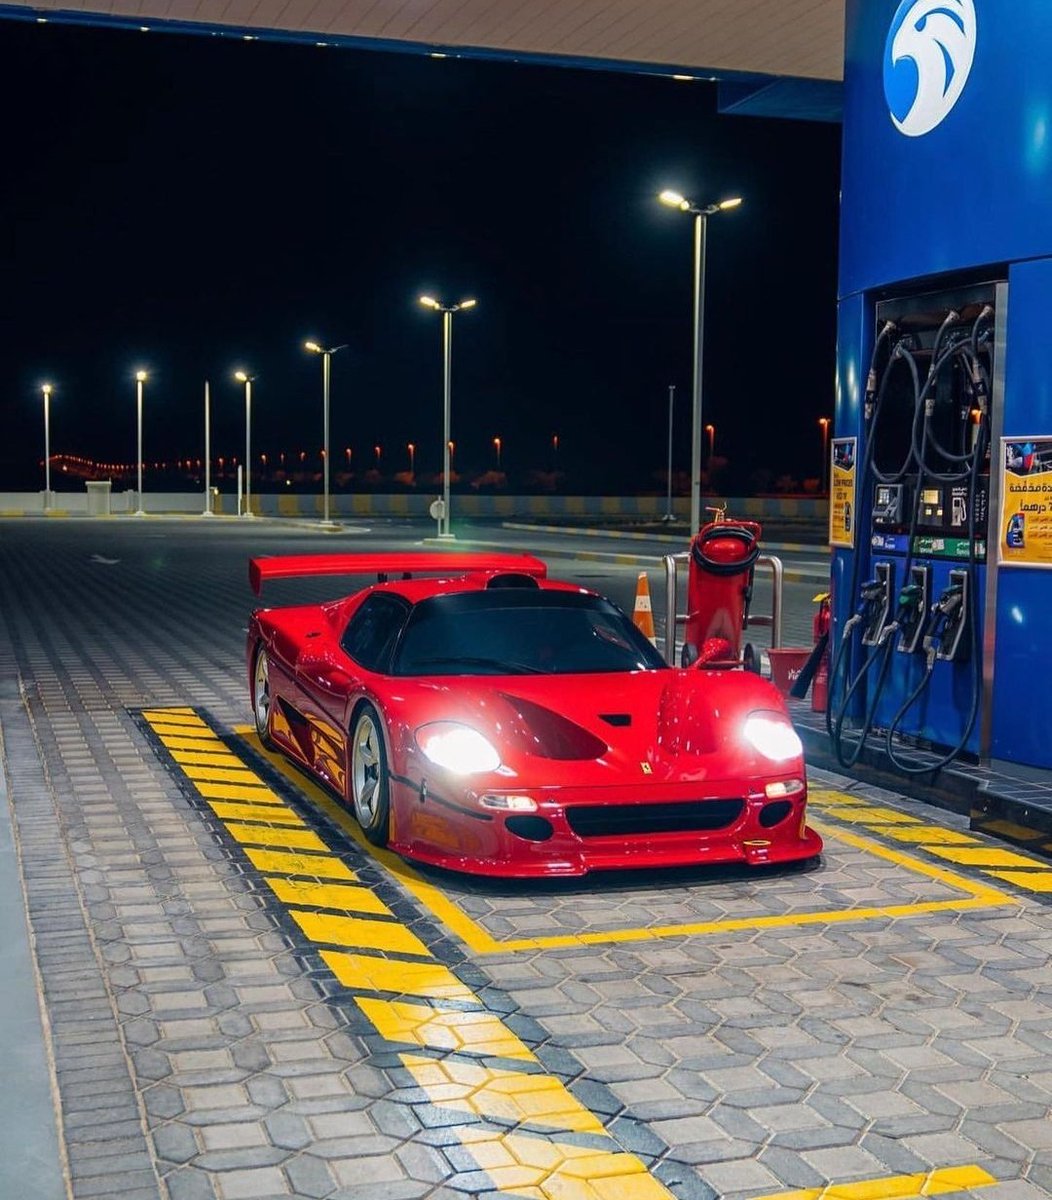 #Ferrari F50 GT

Ready for...#FillUpFriday⛽⛽⛽